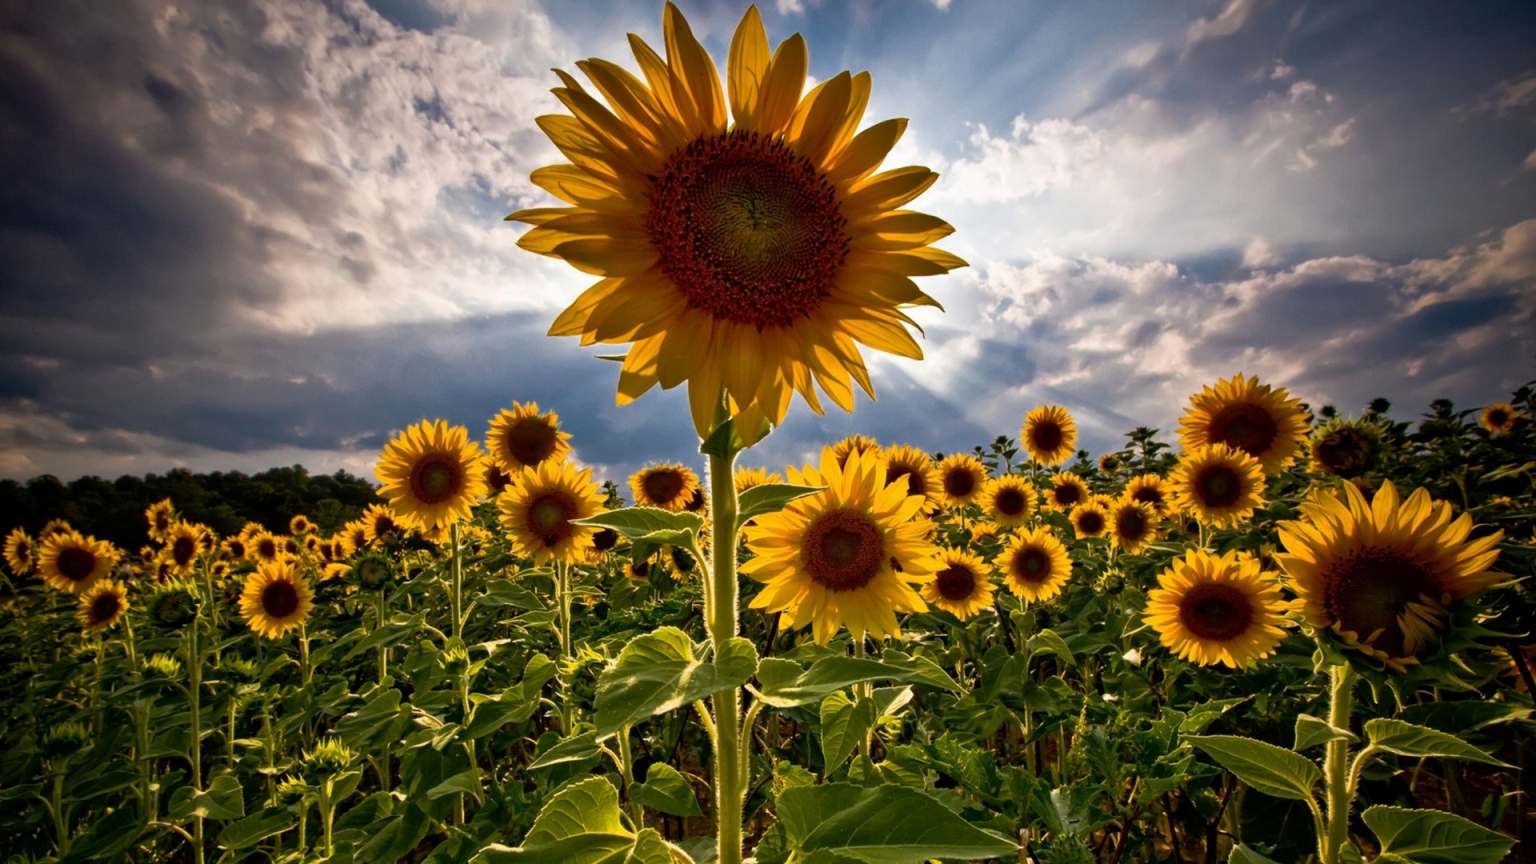 HDR Sunflower for 1536 x 864 HDTV resolution